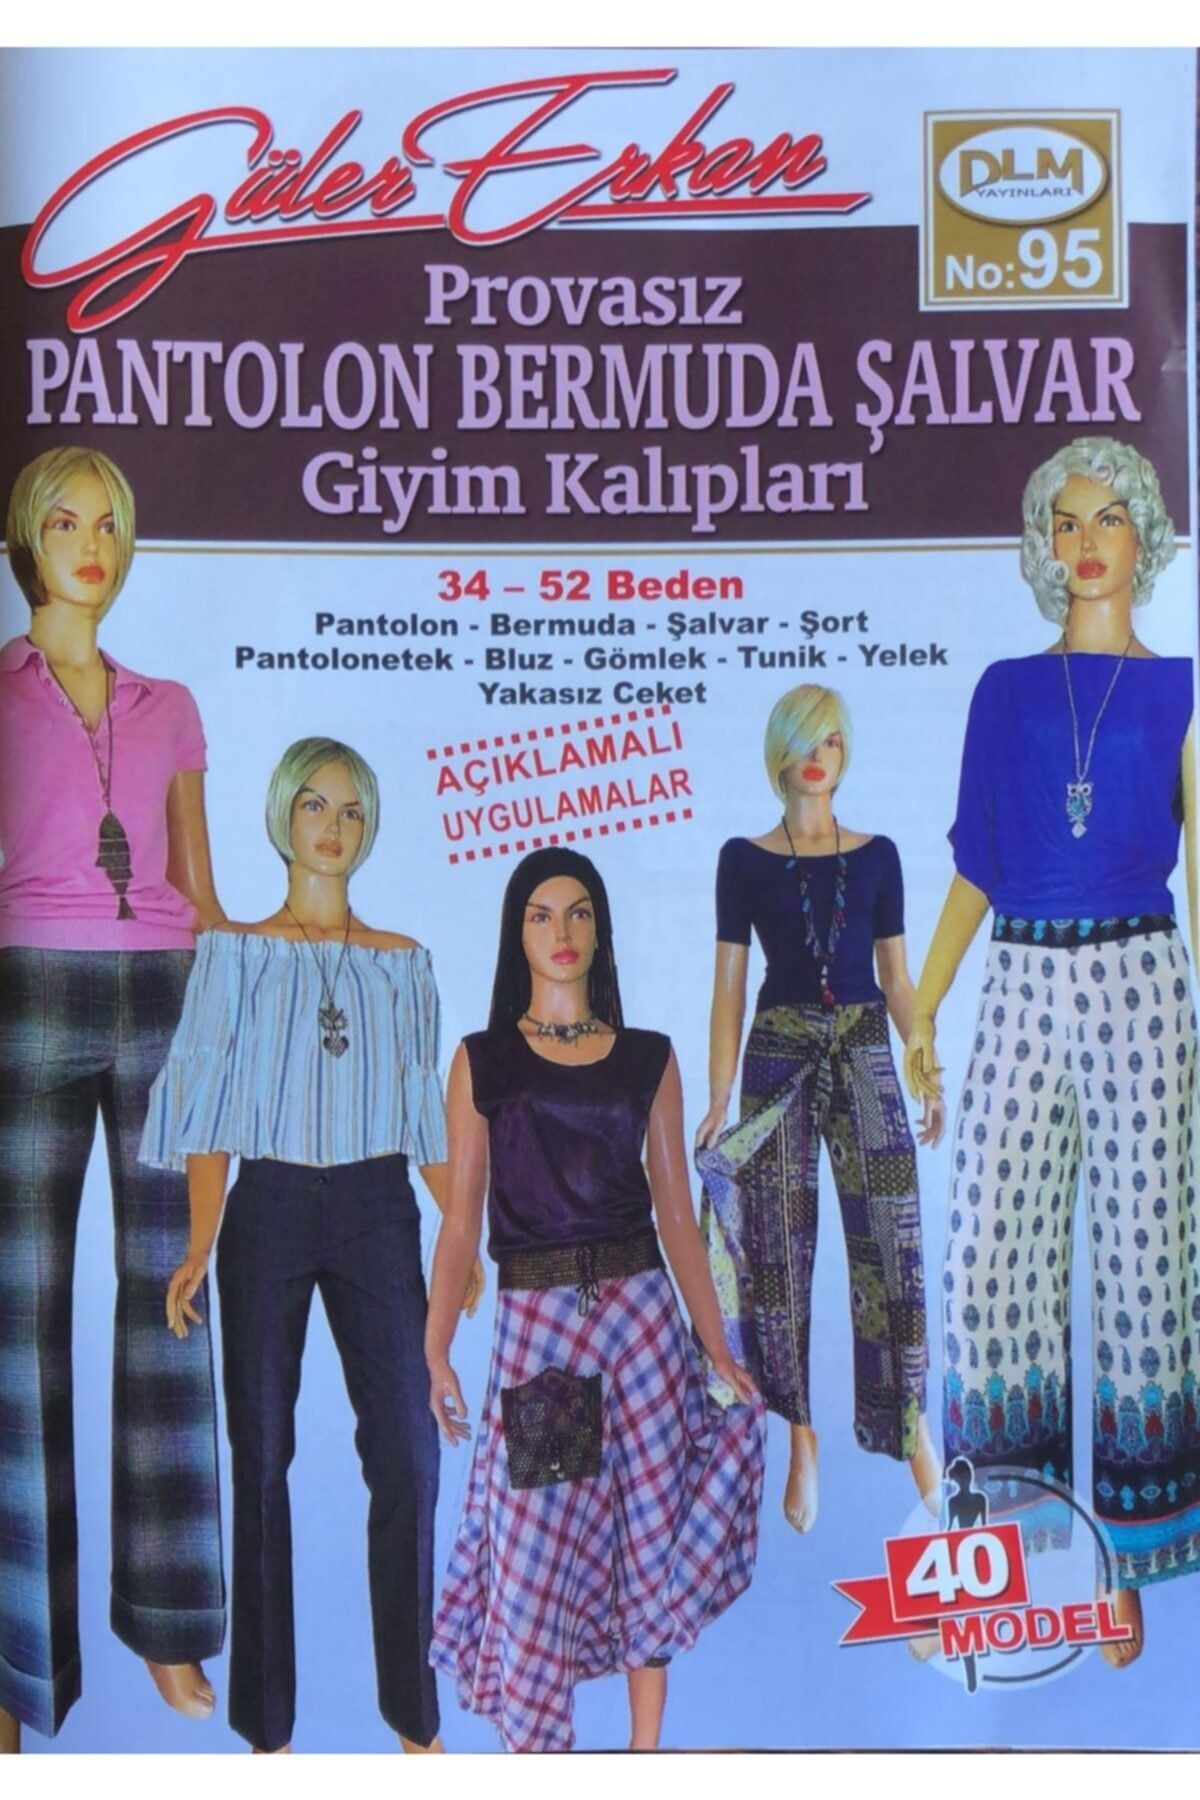 Dilem Yayınları Güler Erkan Provasız Pantolon Bermuda Şalvar Giyim Kalıpları No 95